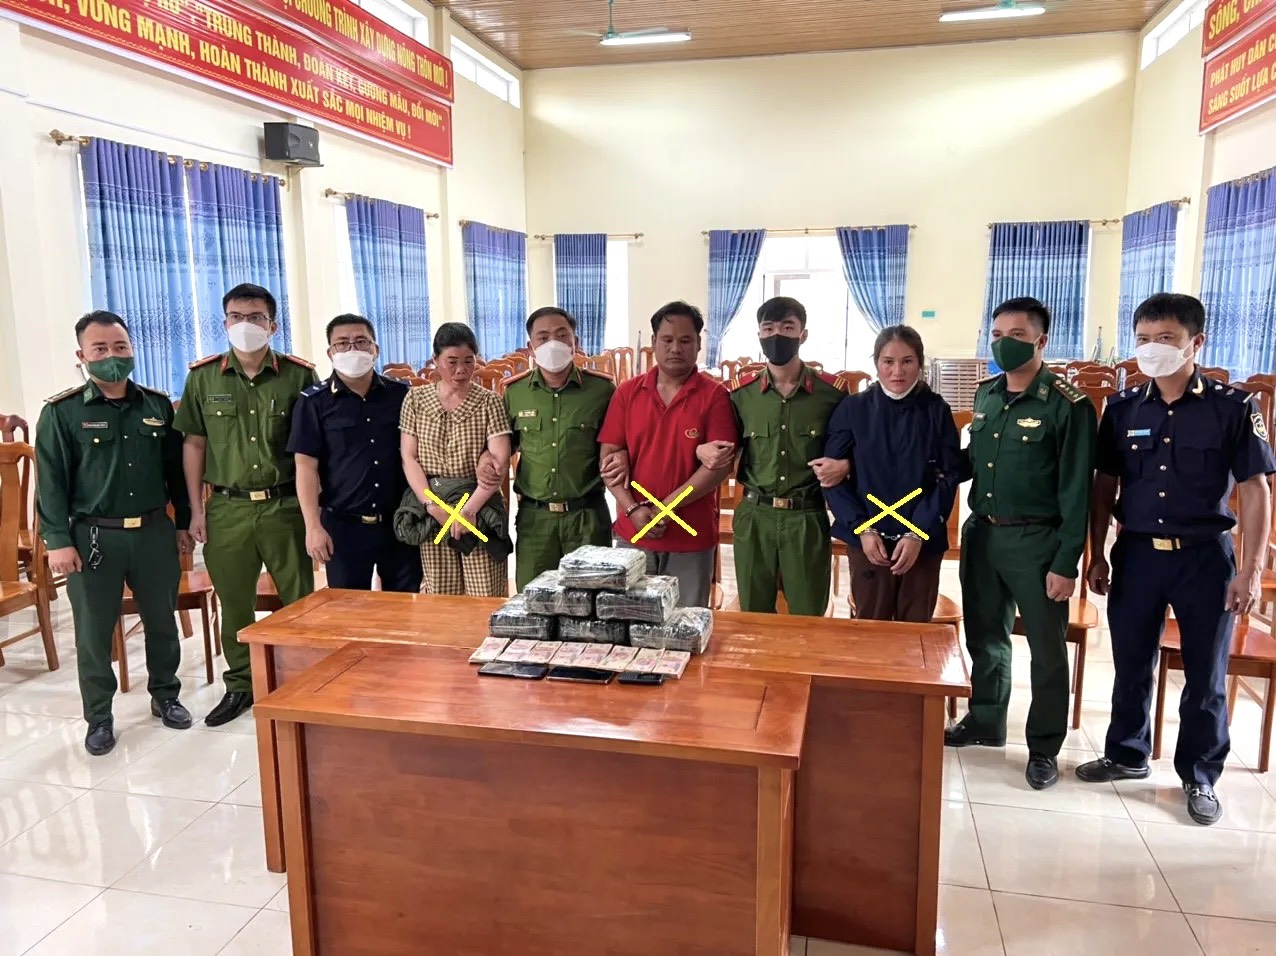 Quảng Bình: Triệt phá tổ chức tội phạm ma túy hoạt động xuyên biên giới, thu giữ hơn 13 kg Ketamin - Ảnh 1.